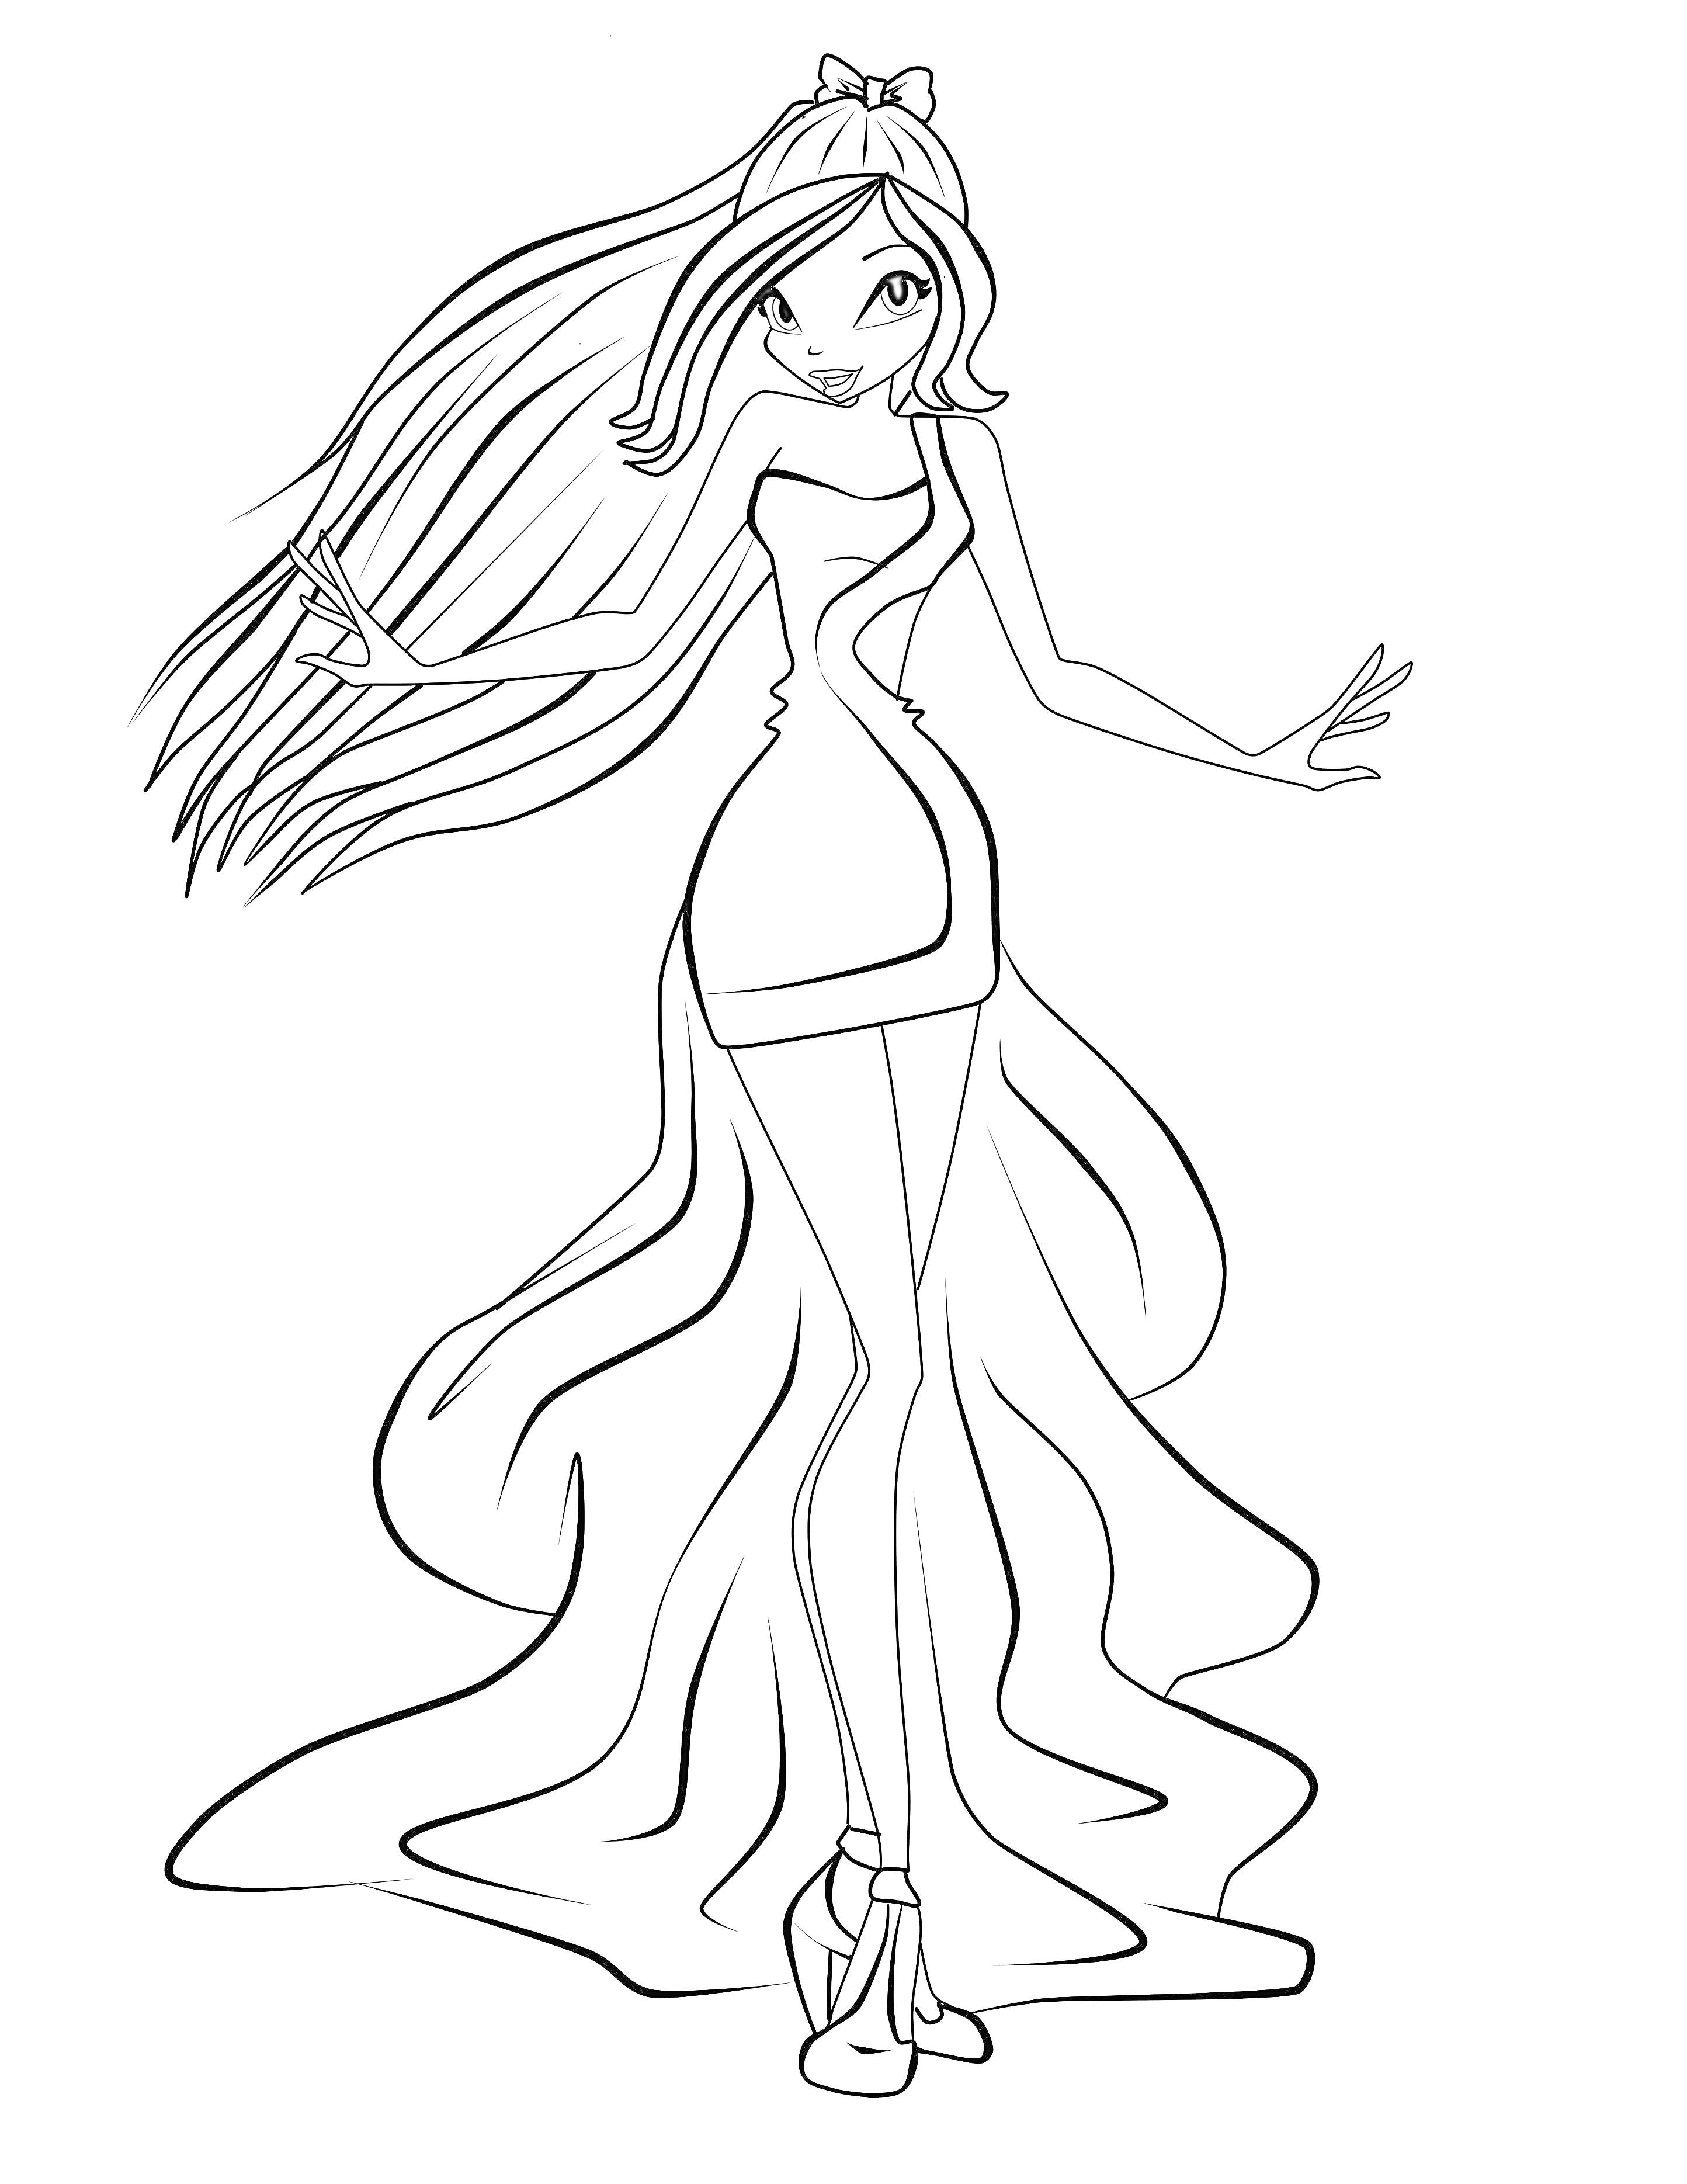 Раскраска Принцесса из Винкс в платье с длинным хвостом, повязка на волосах, длинные распущенные волосы